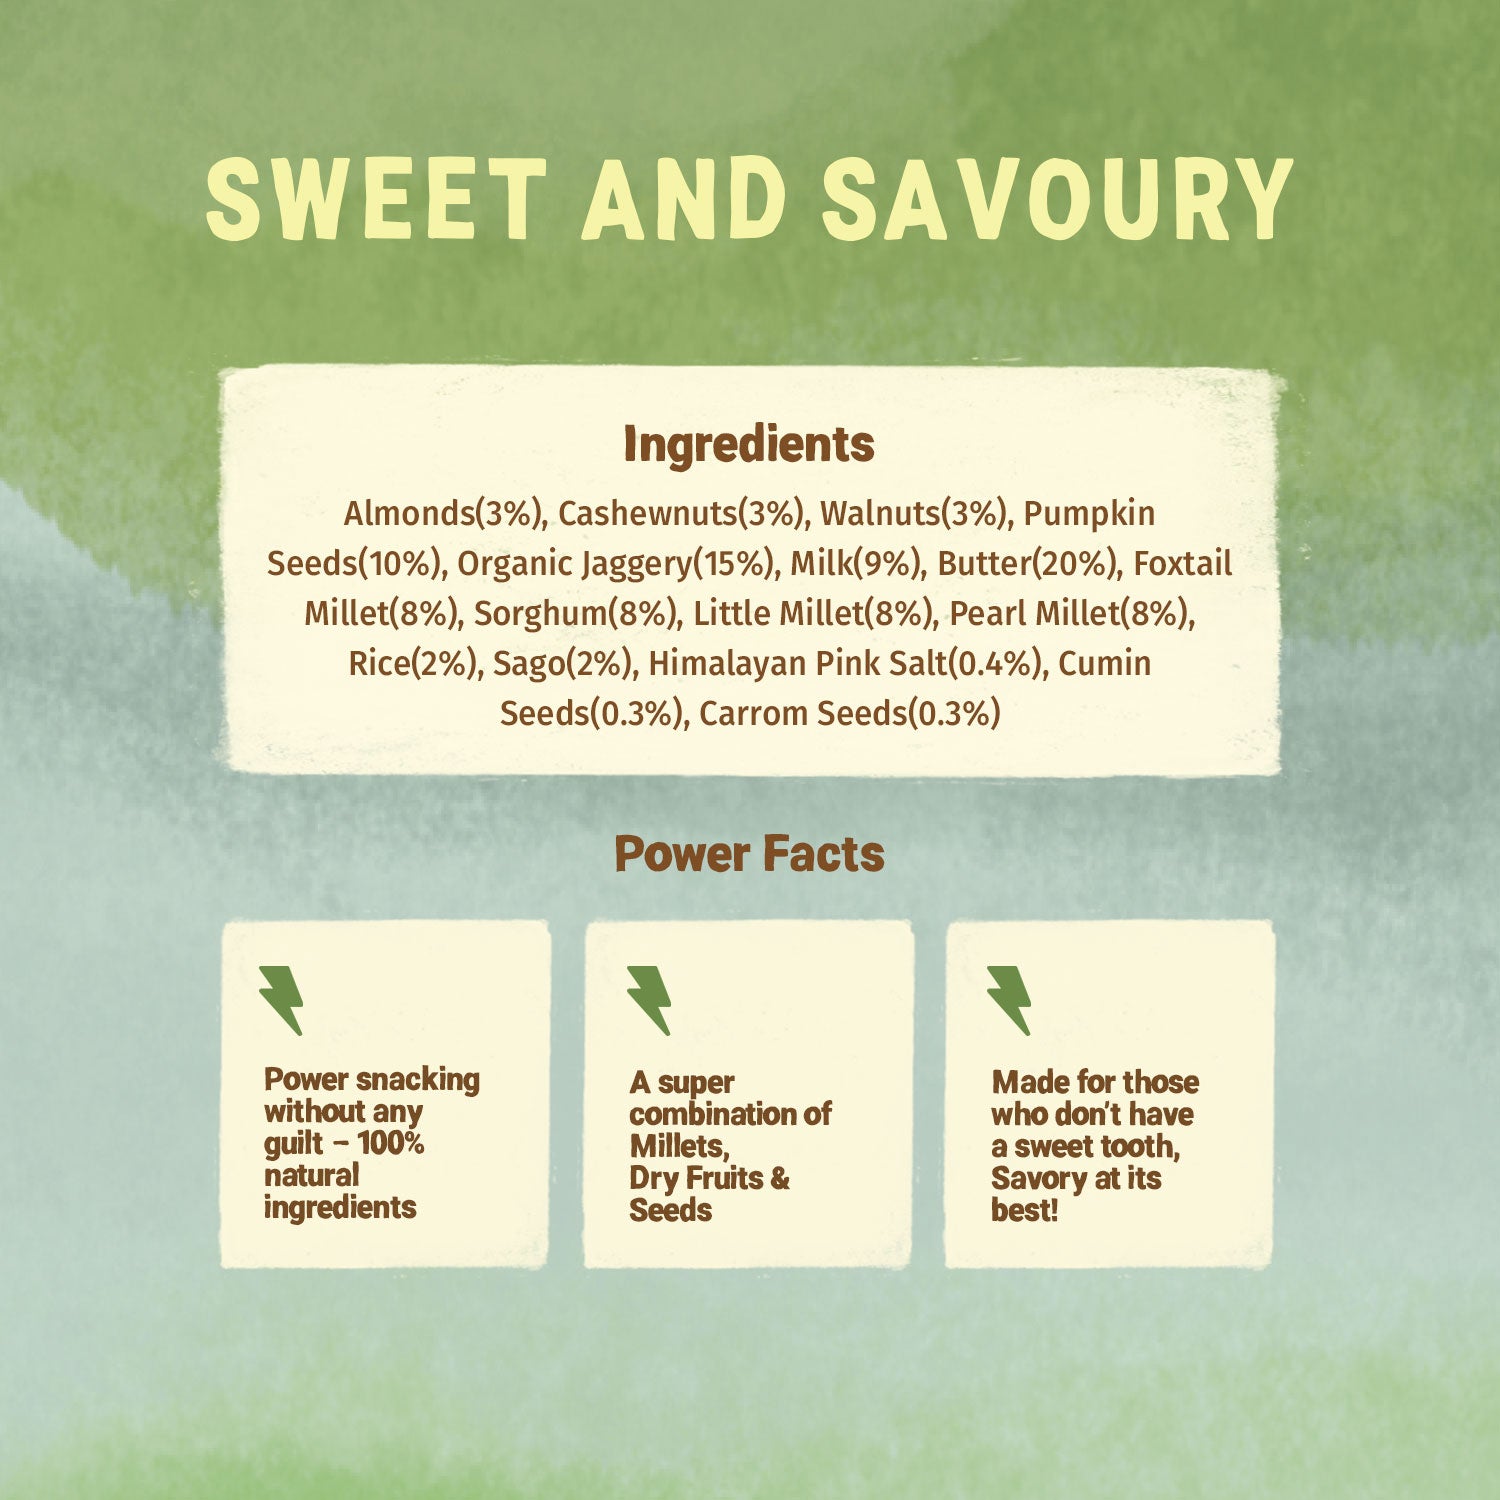 Healthy & Nutritional Cookies pack of 2 | Nuts & Seeds |Sweet & Savory| 150g each